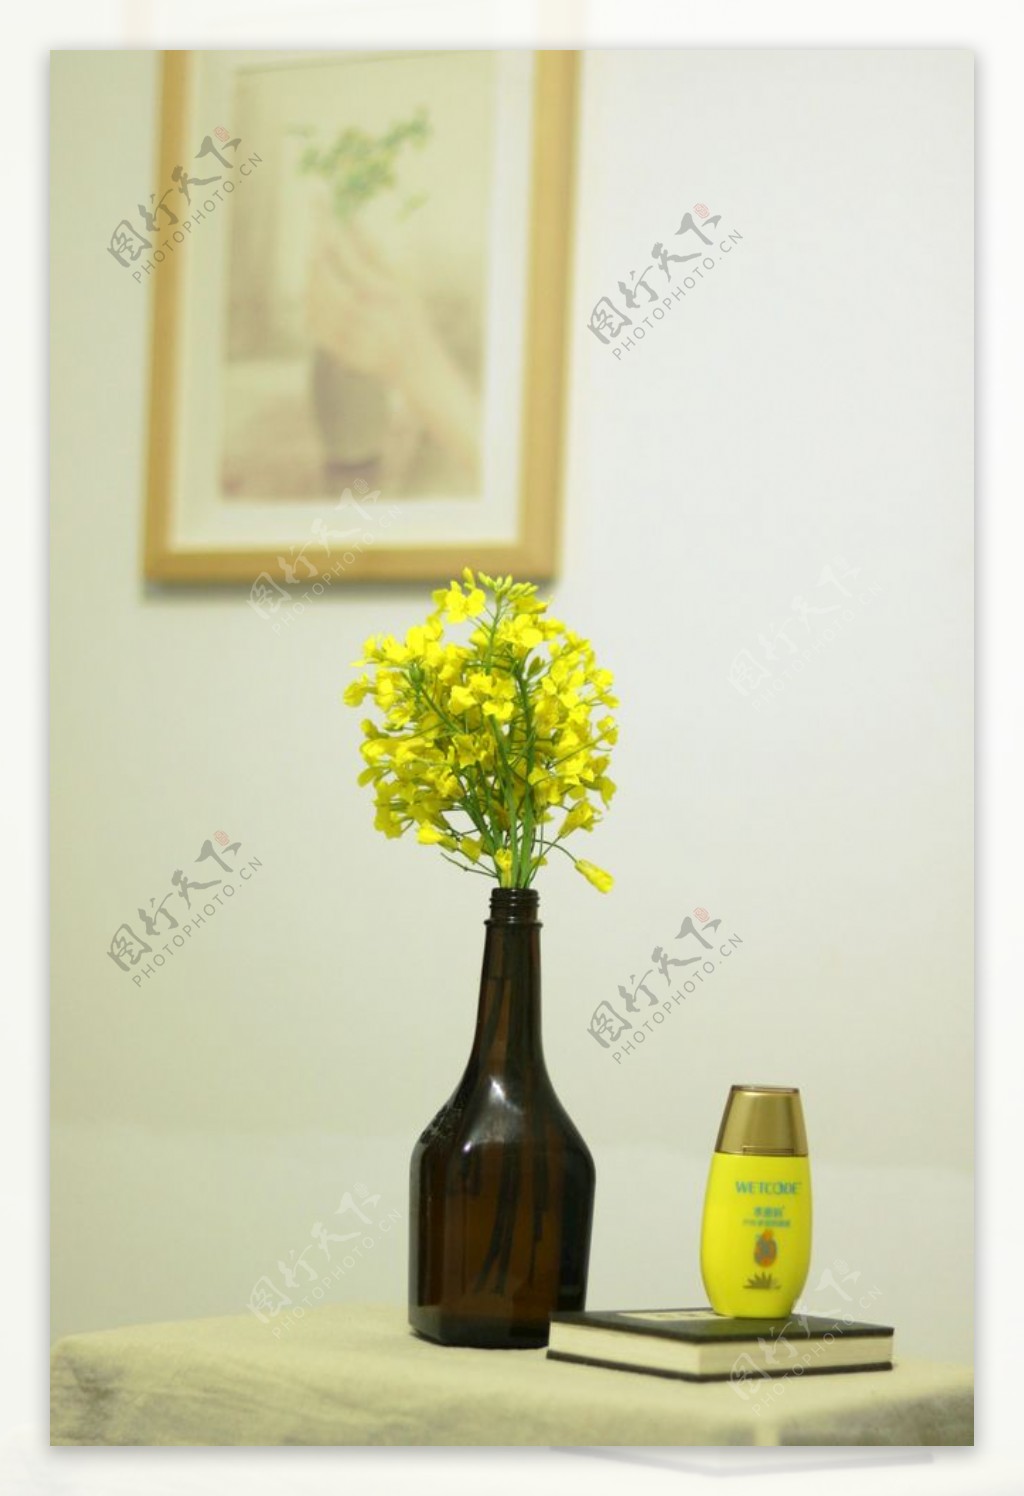 静物花瓶图片